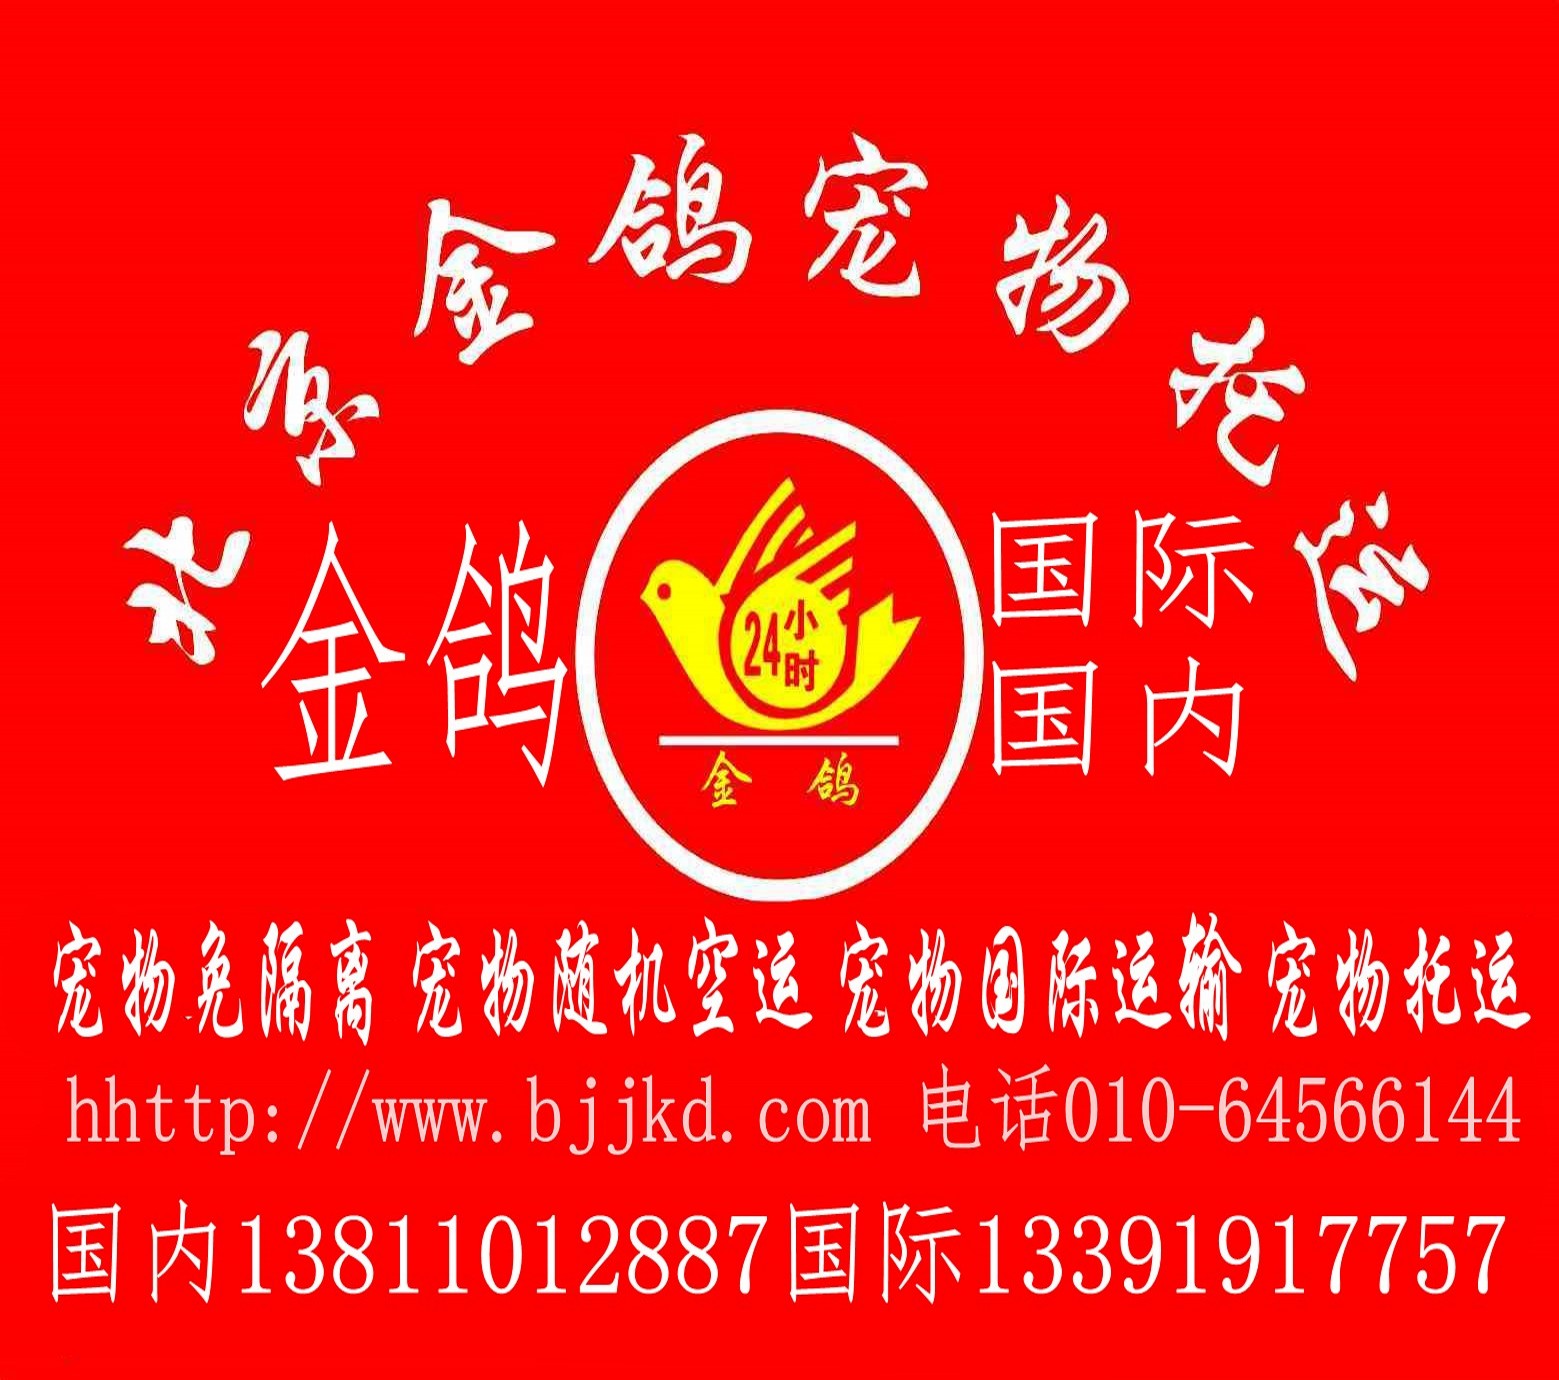 北京宠物托运 全国宠物托运专车 北京宠物空运宠物空运 宠物航空托运 宠物专车